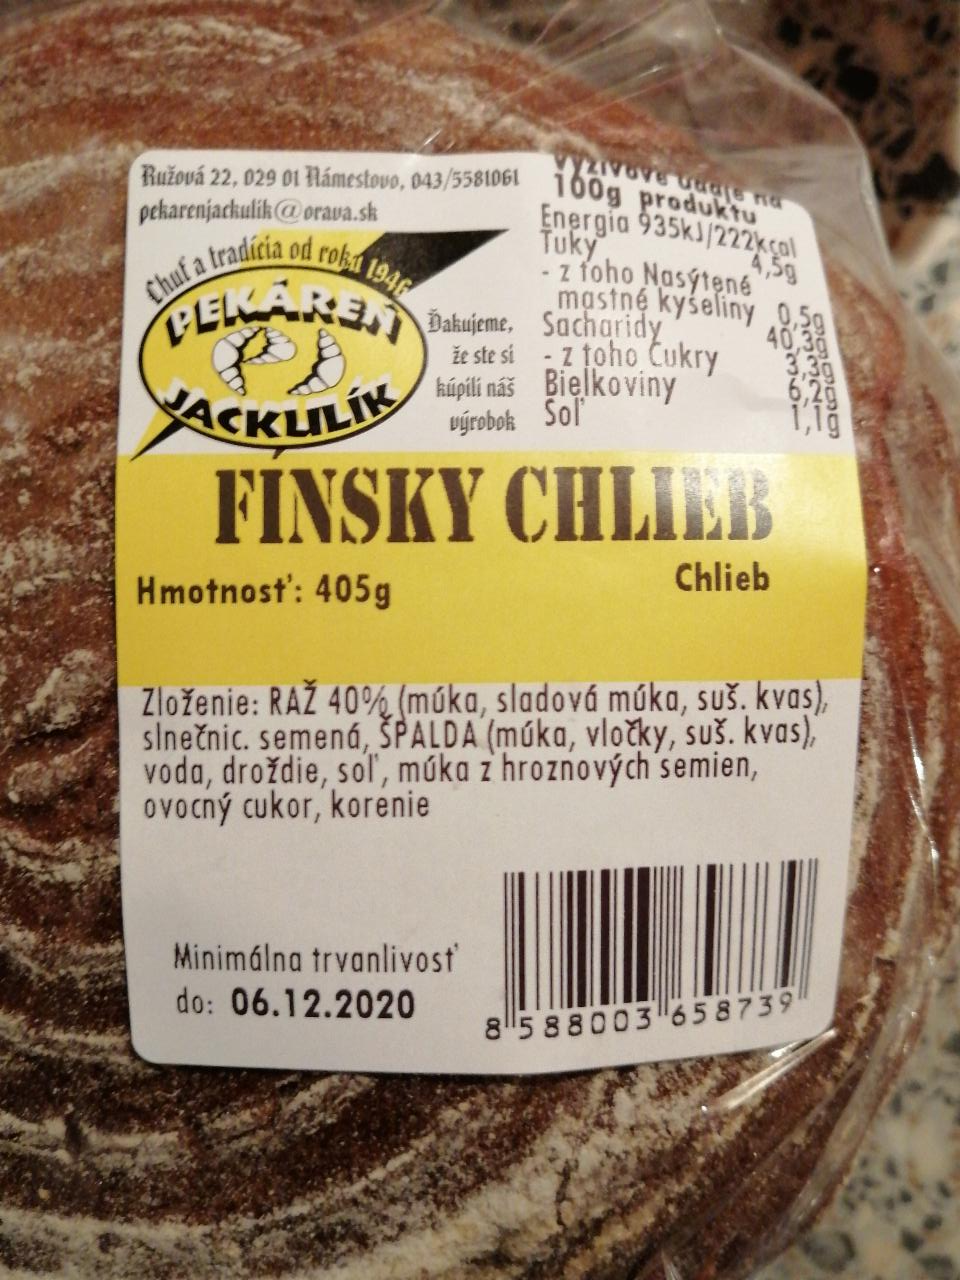 Fotografie - Fínsky chlieb Jackulík